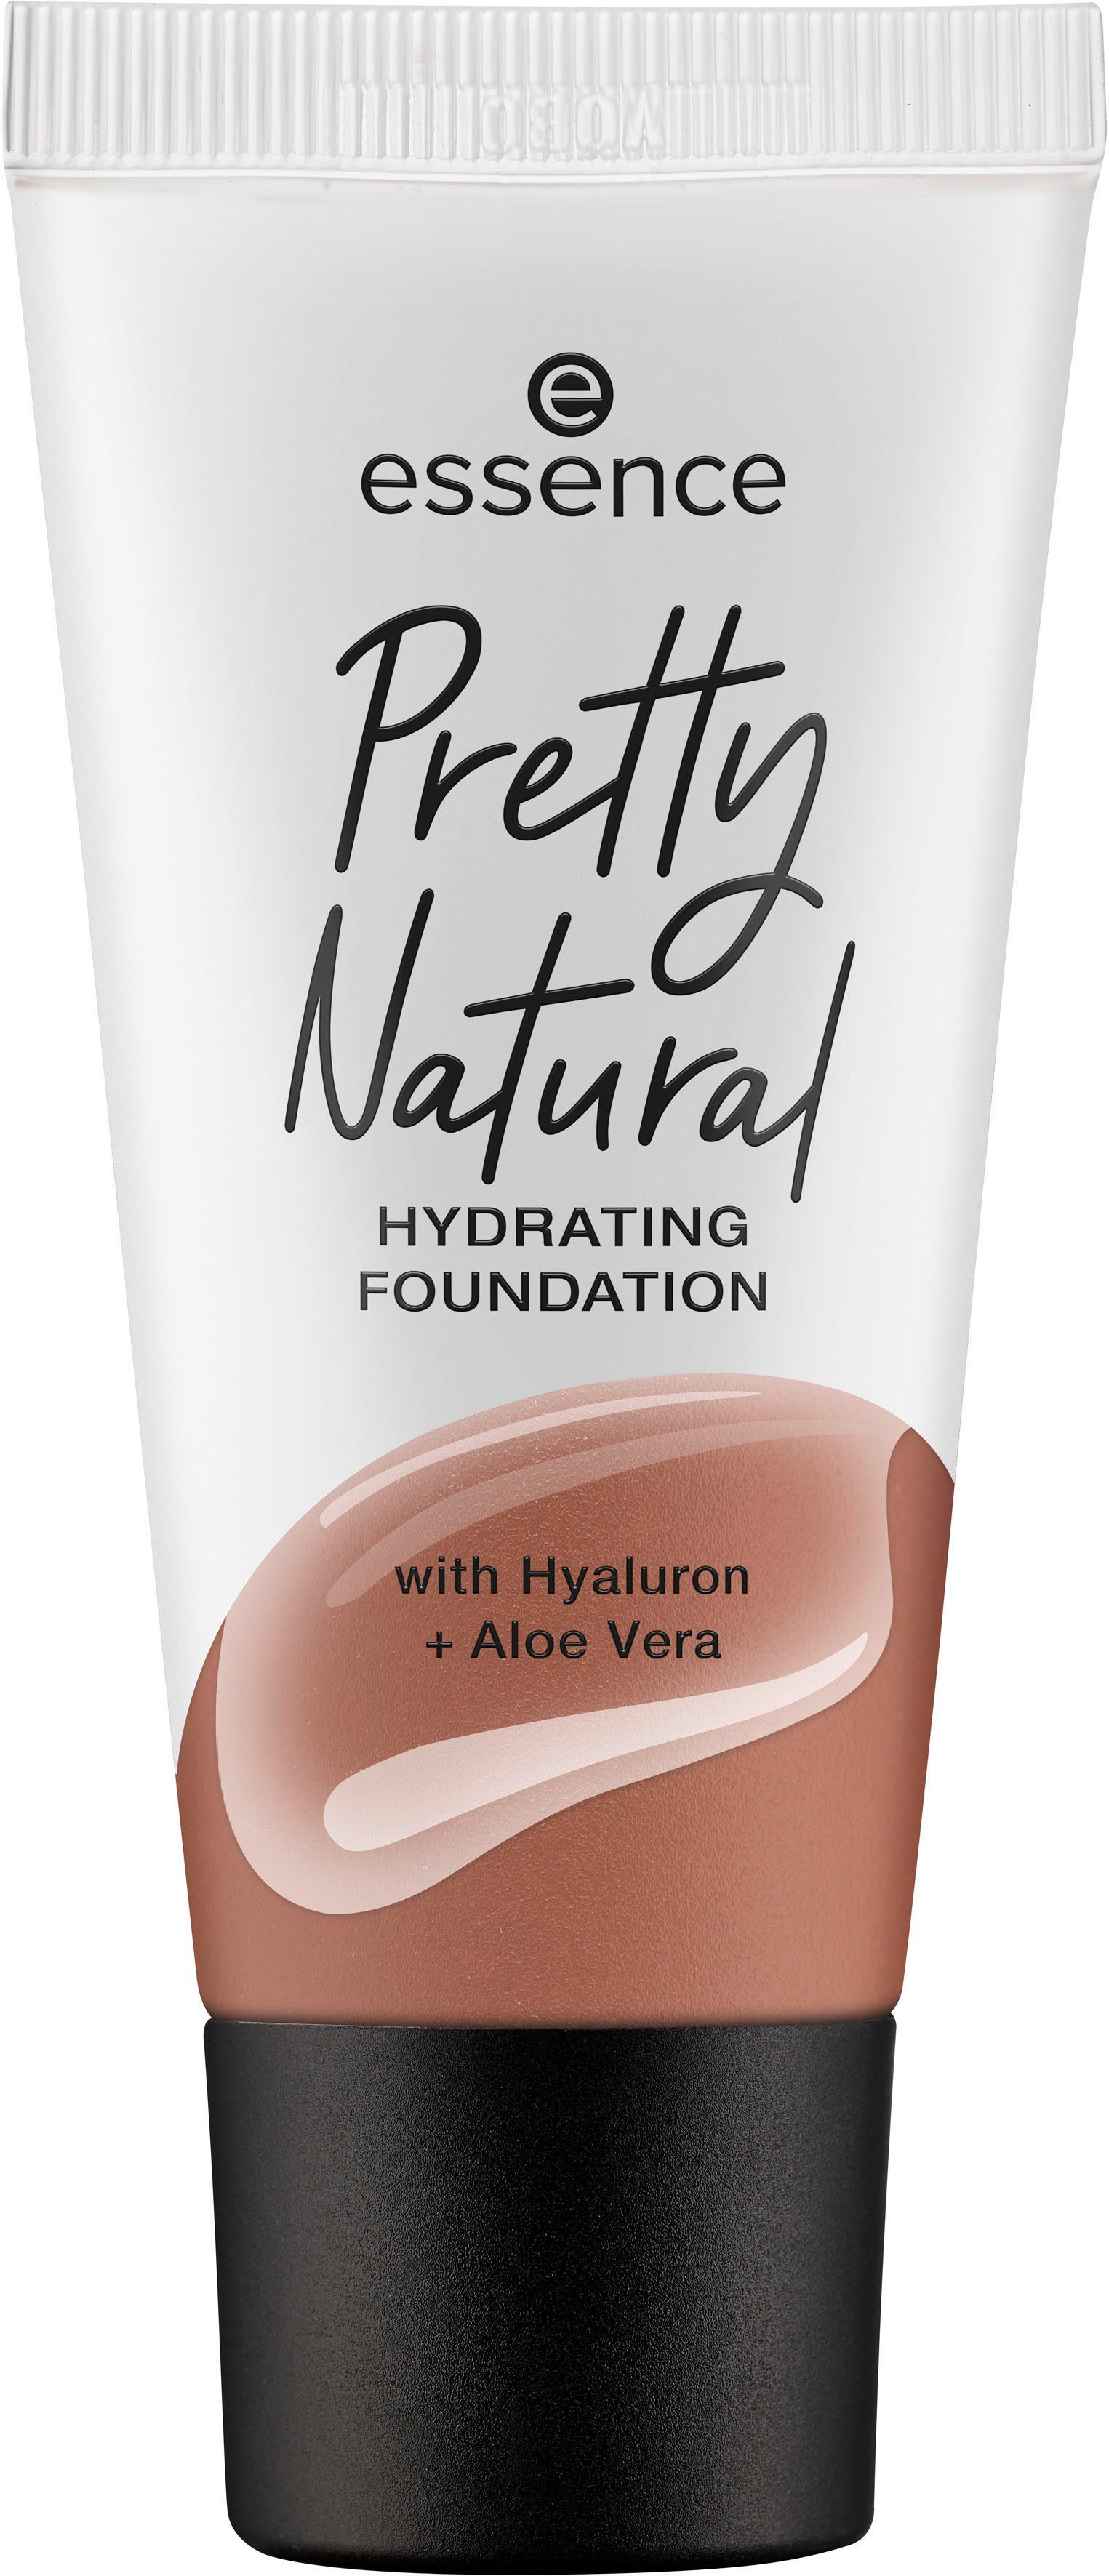 Sienna Warm Essence HYDRATING, Foundation Pretty Natural 3-tlg.